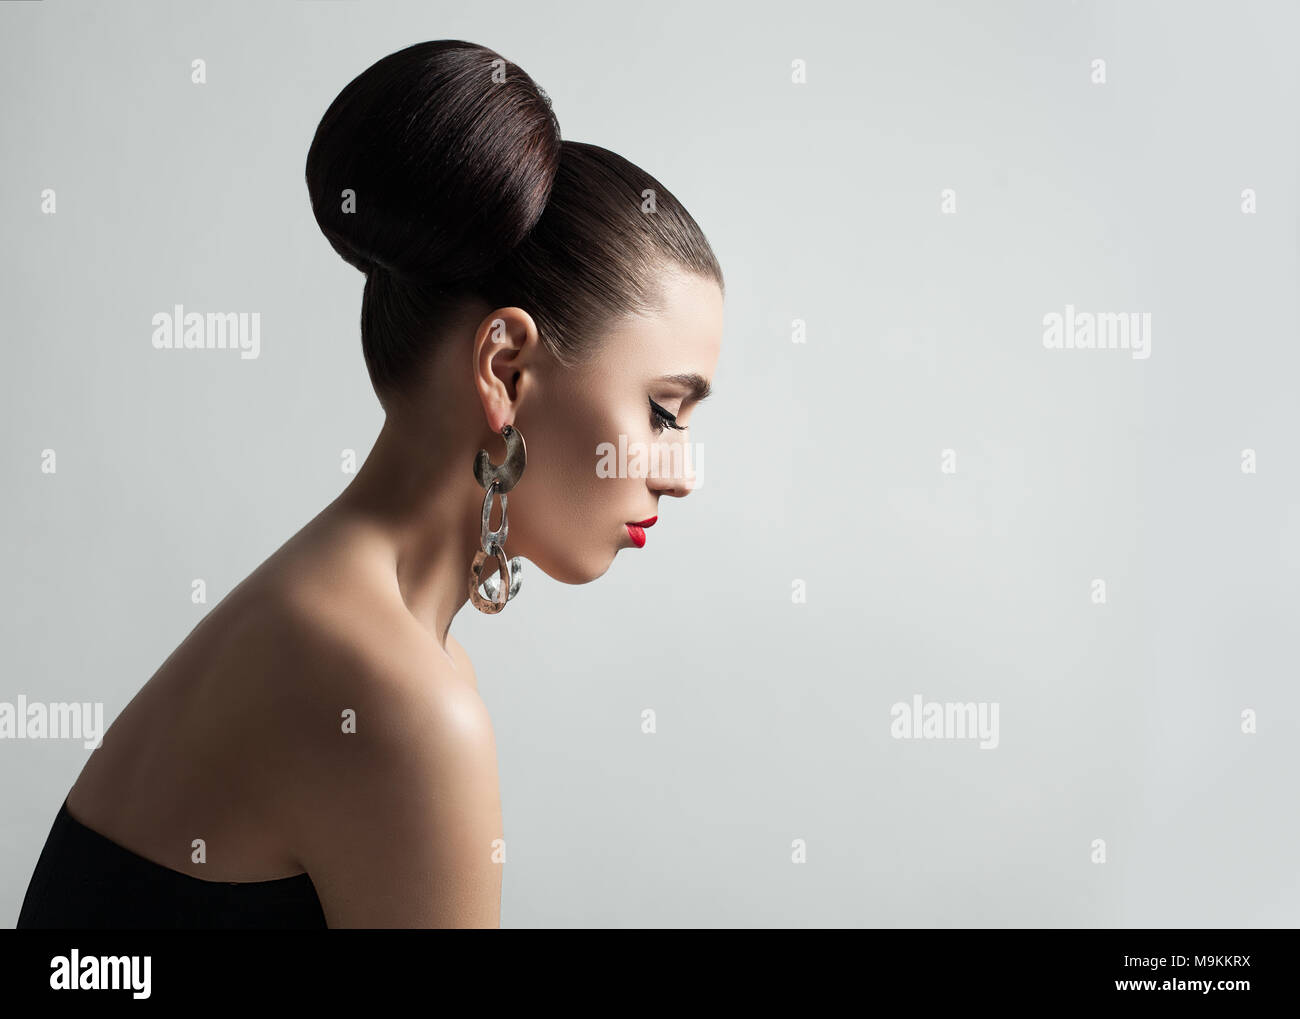 Jolie Jeune femme avec cheveux Bun Coiffure et maquillage Eyeliner. Modèle féminin parfait, Portrait de profil. Banque D'Images